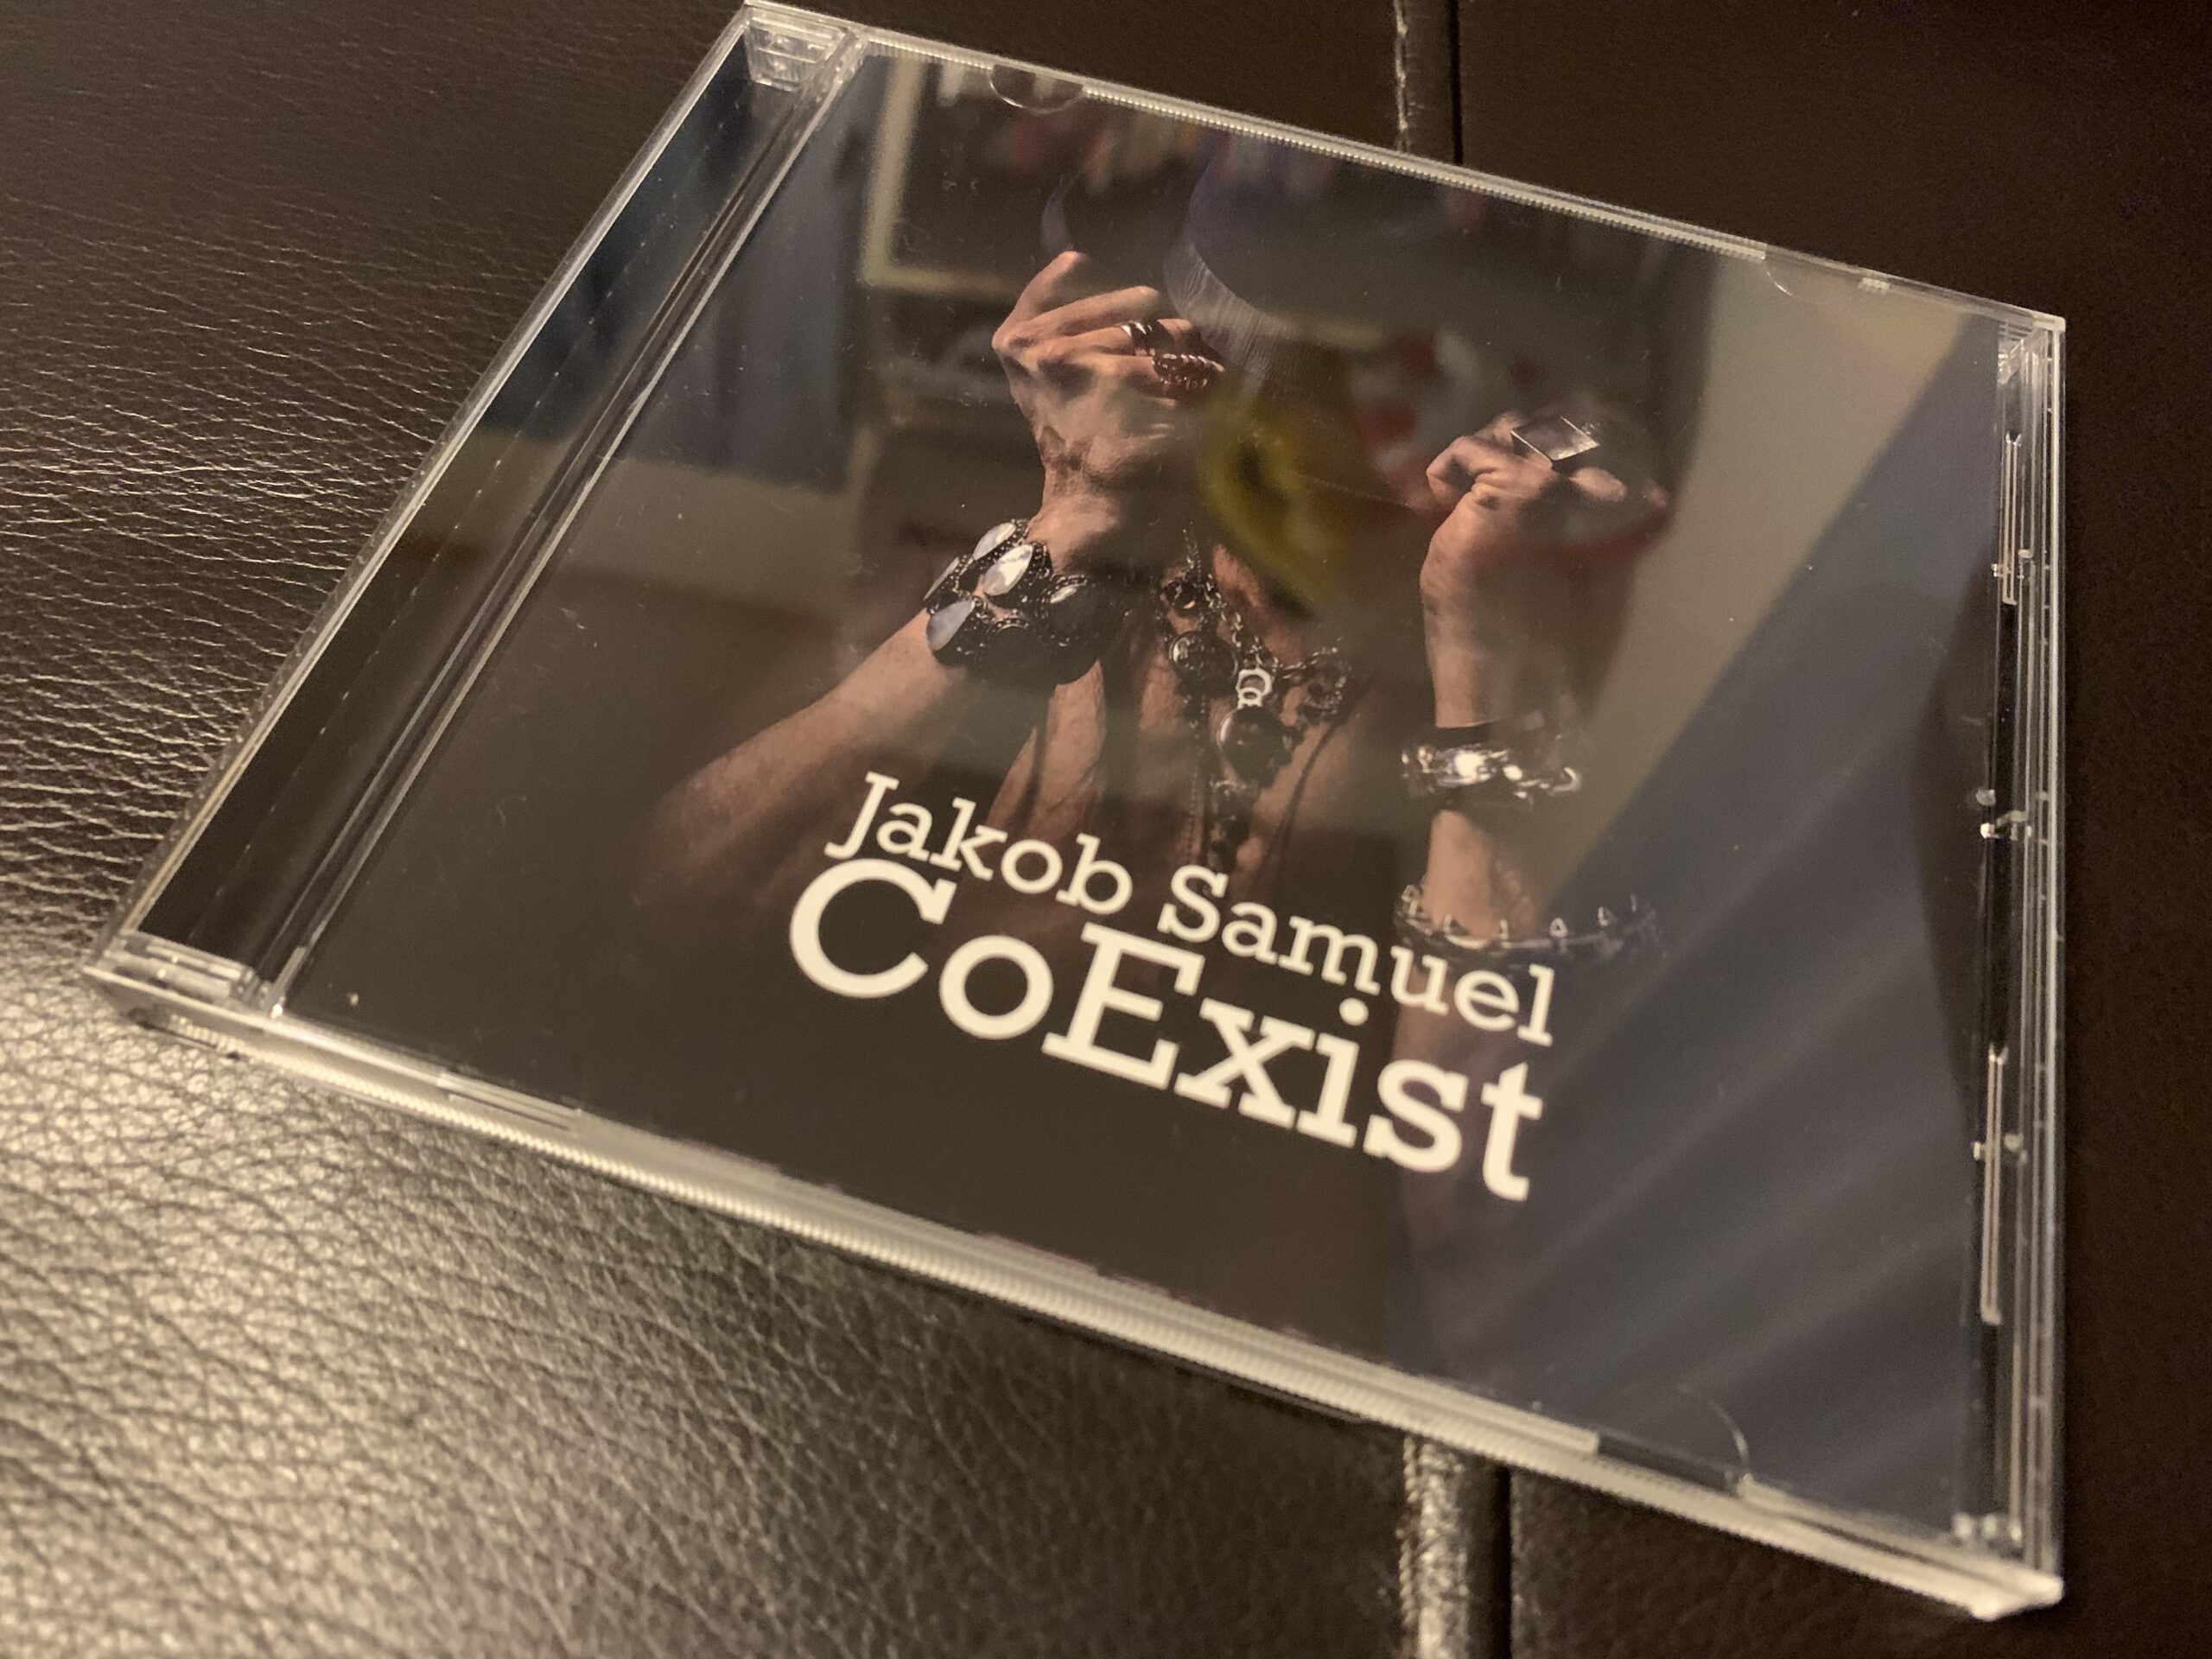 2018年に解散したThe Poodlesのヴォーカリスト、Jakob Samuelのソロアルバム『CoExist』が素晴らしい